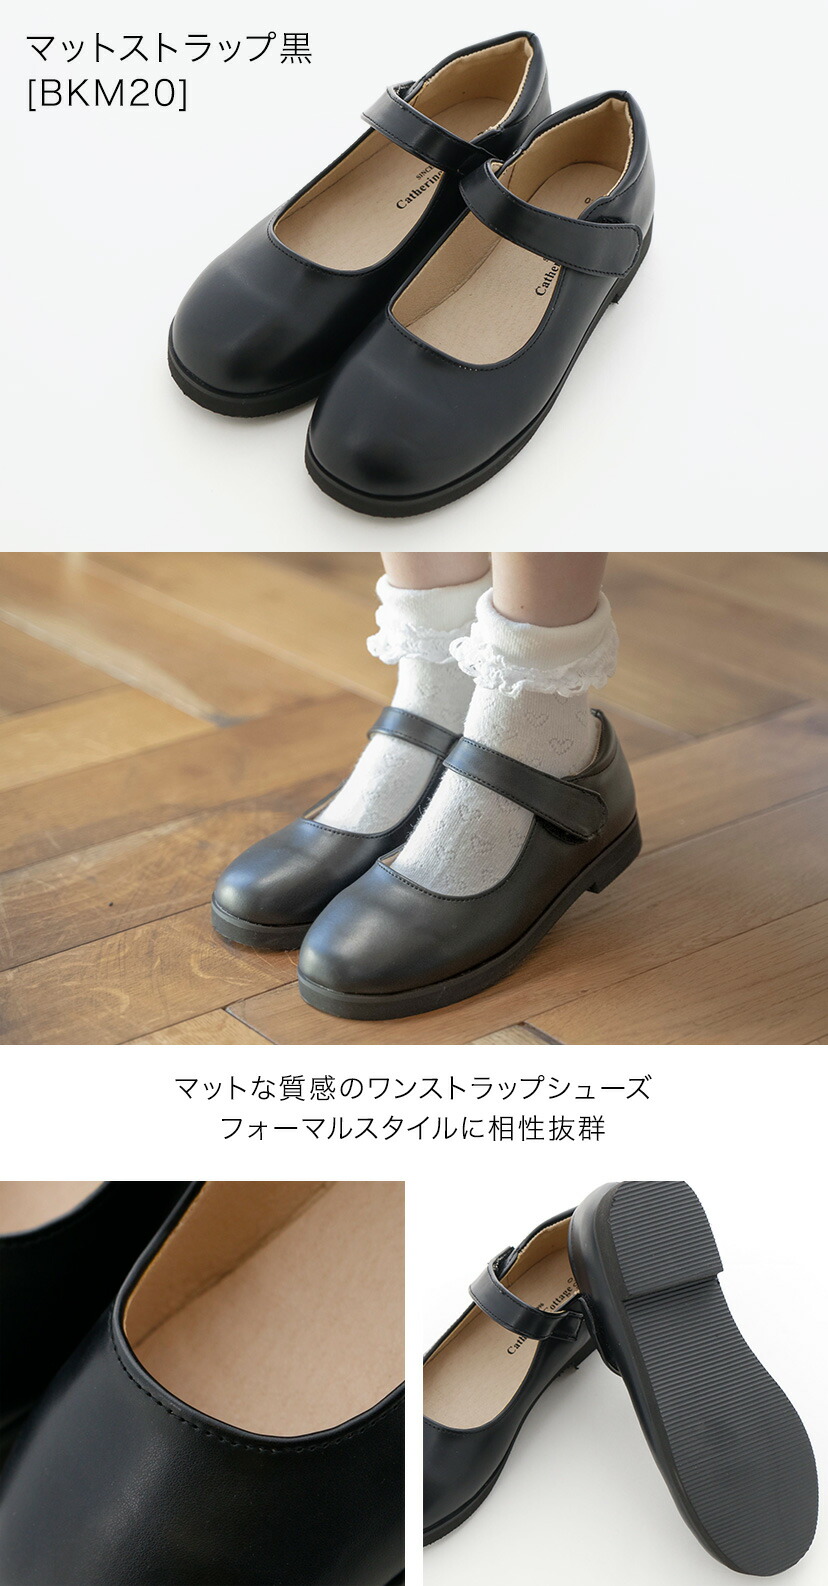 . входить . тип распродажа / формальная обувь one ремешок формальная обувь девочка Kids входить . тип церемония окончания TAK Katharine kote-ji